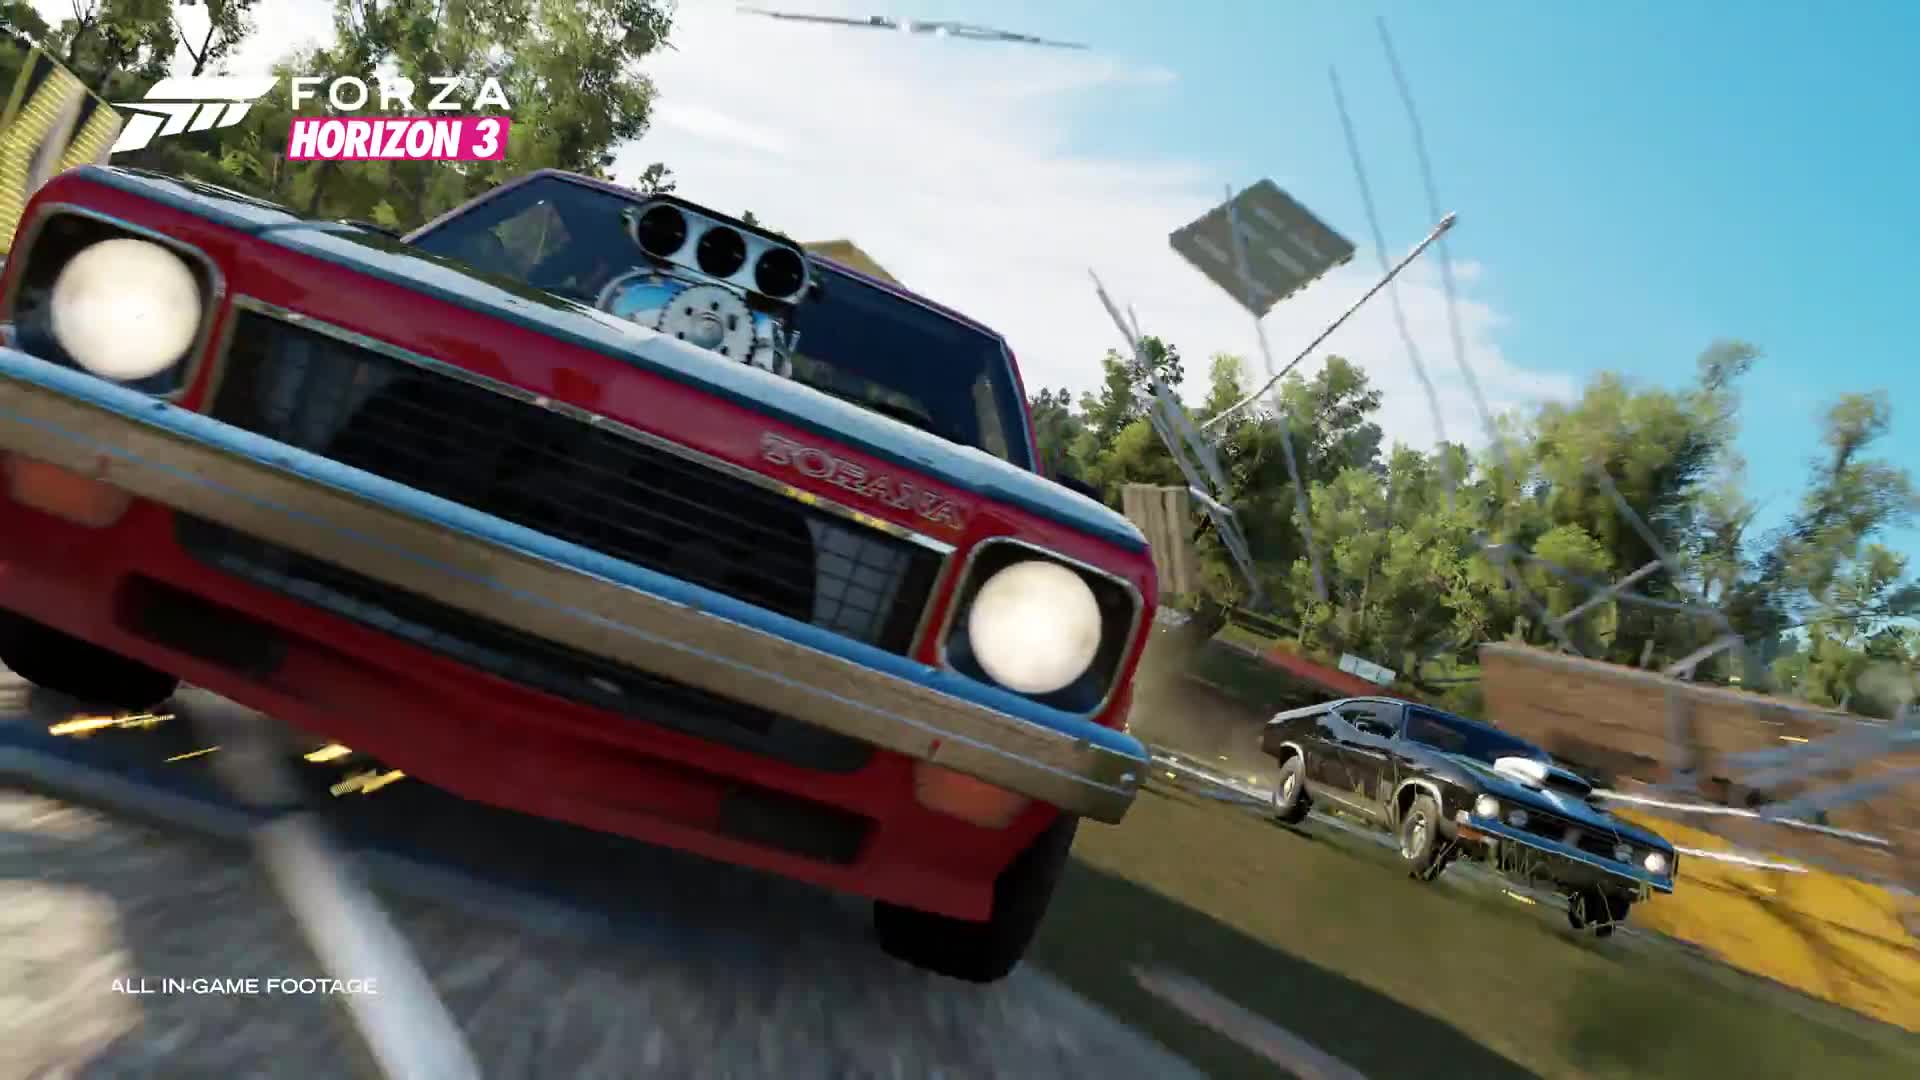 Forza Horizon 3 launch trailer